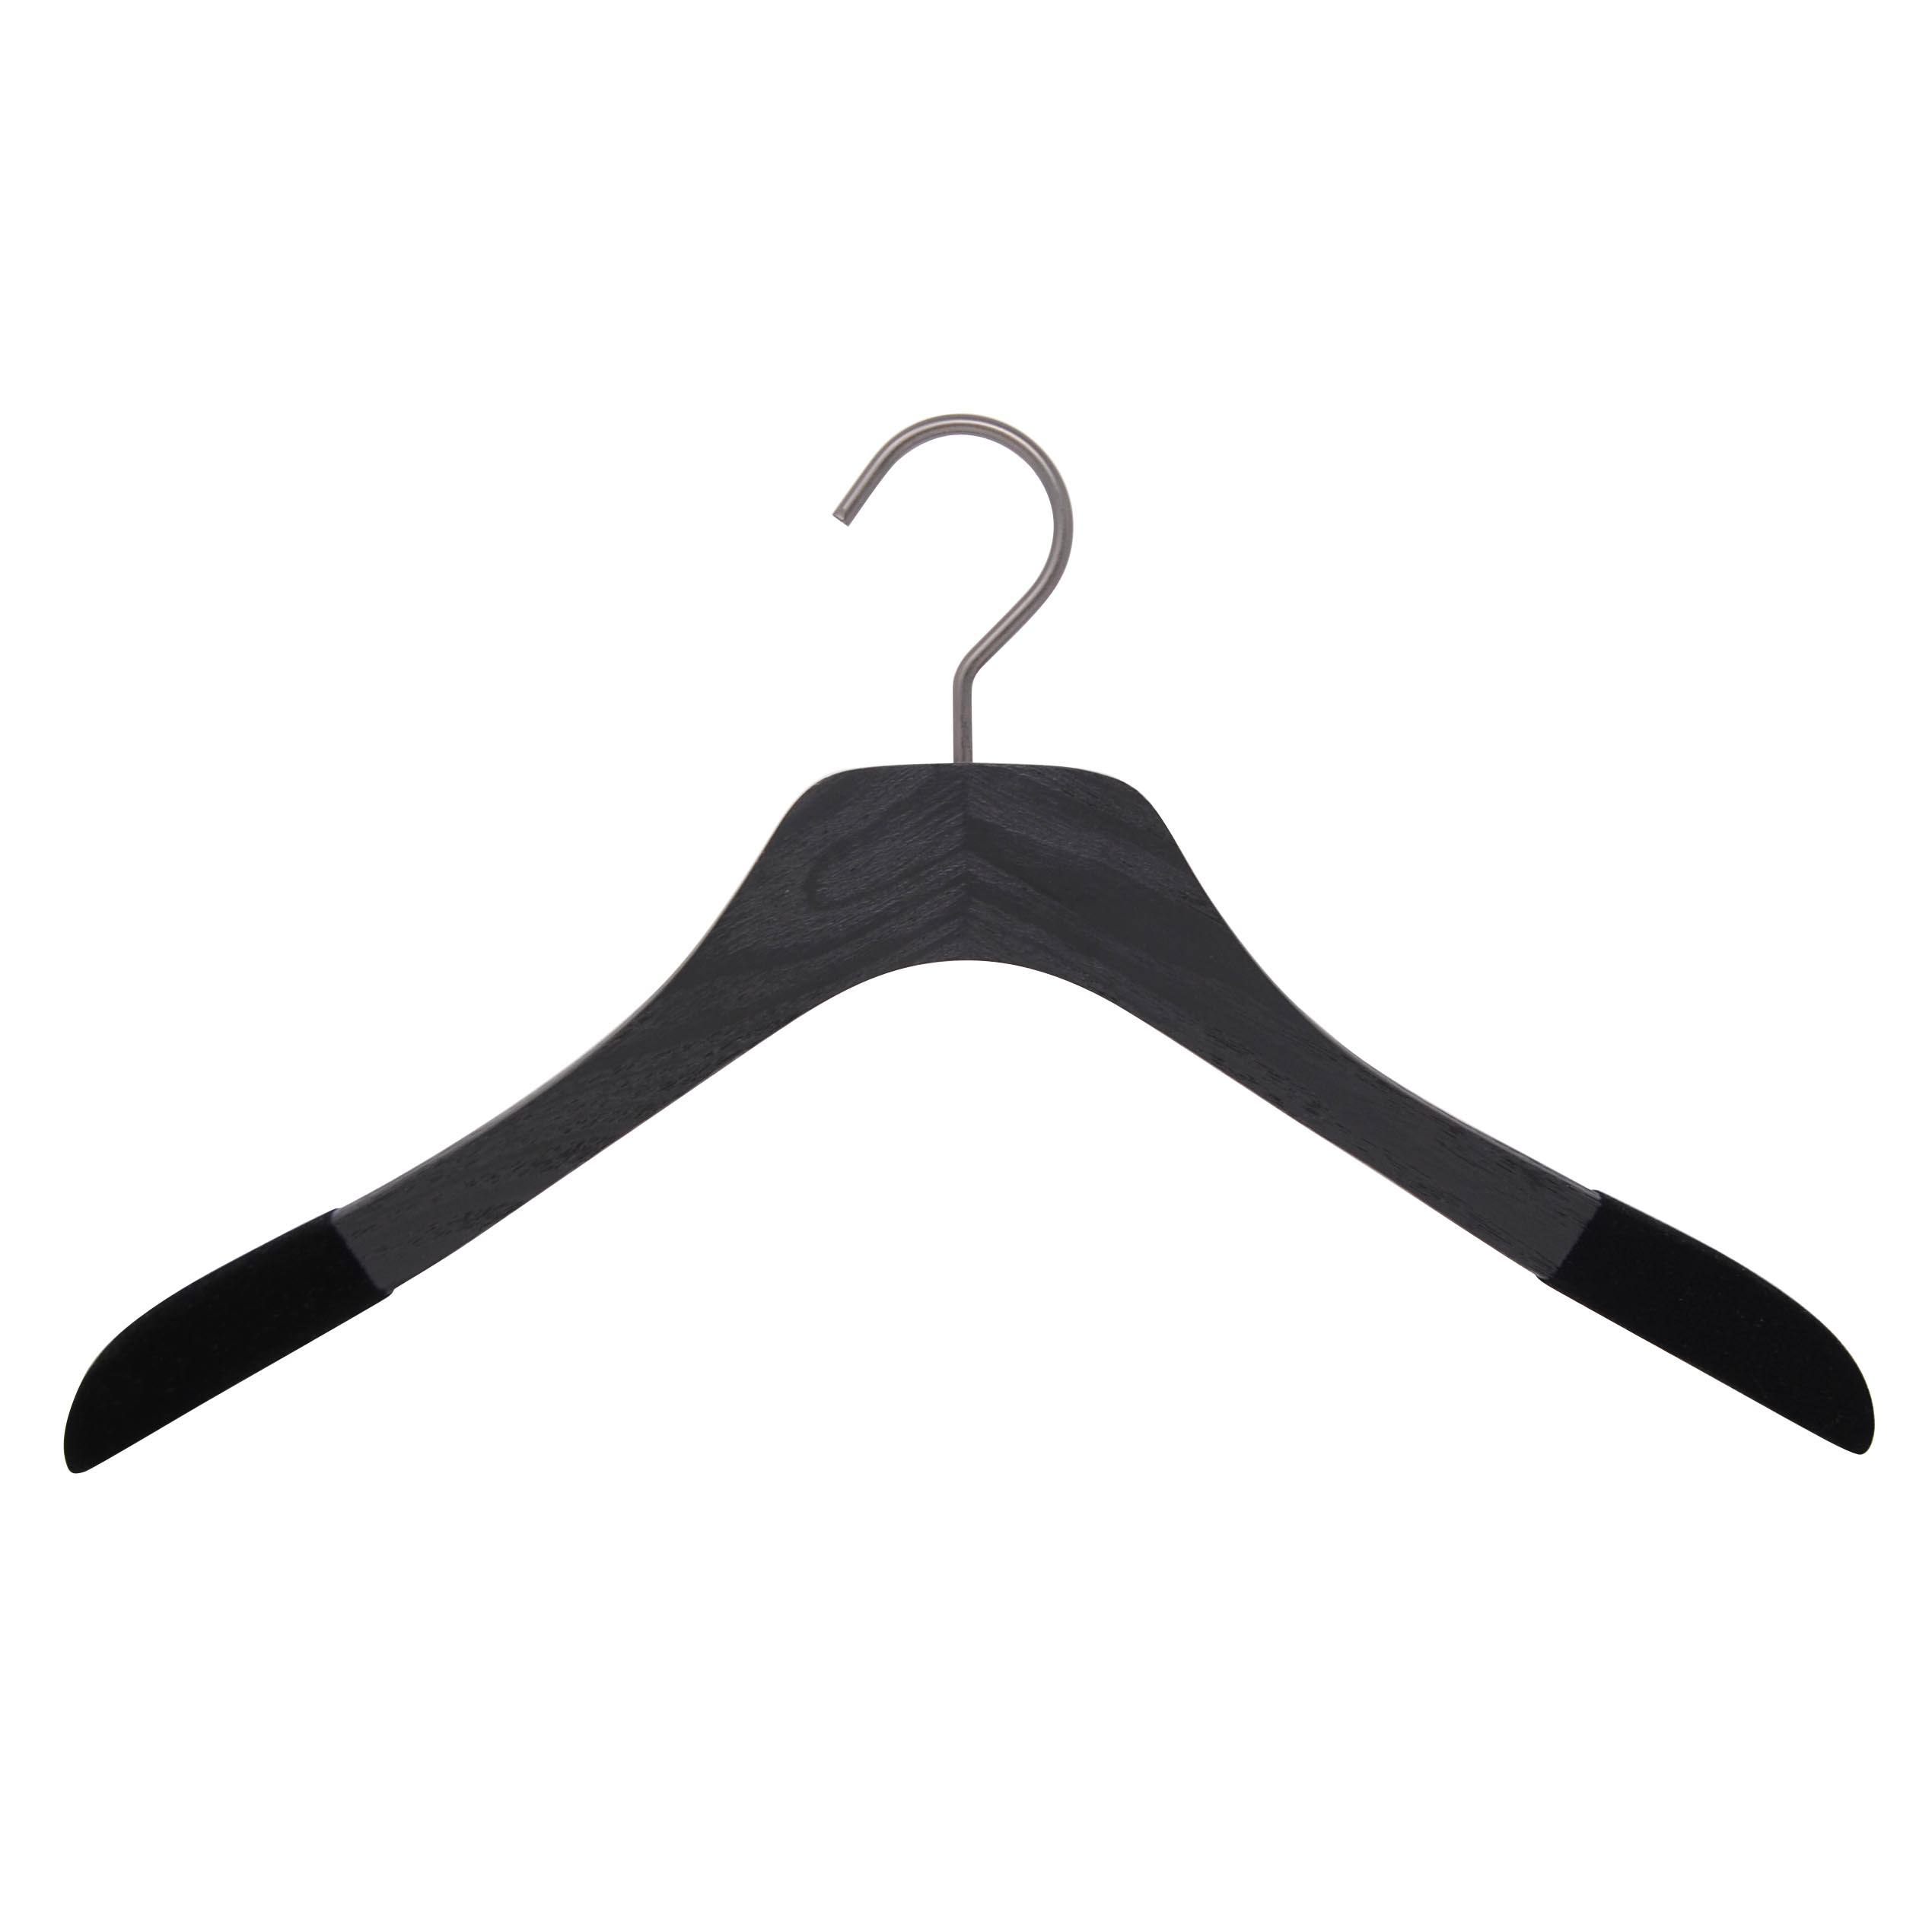 slim wooden luxury hangers for shirt with non-slip velvet